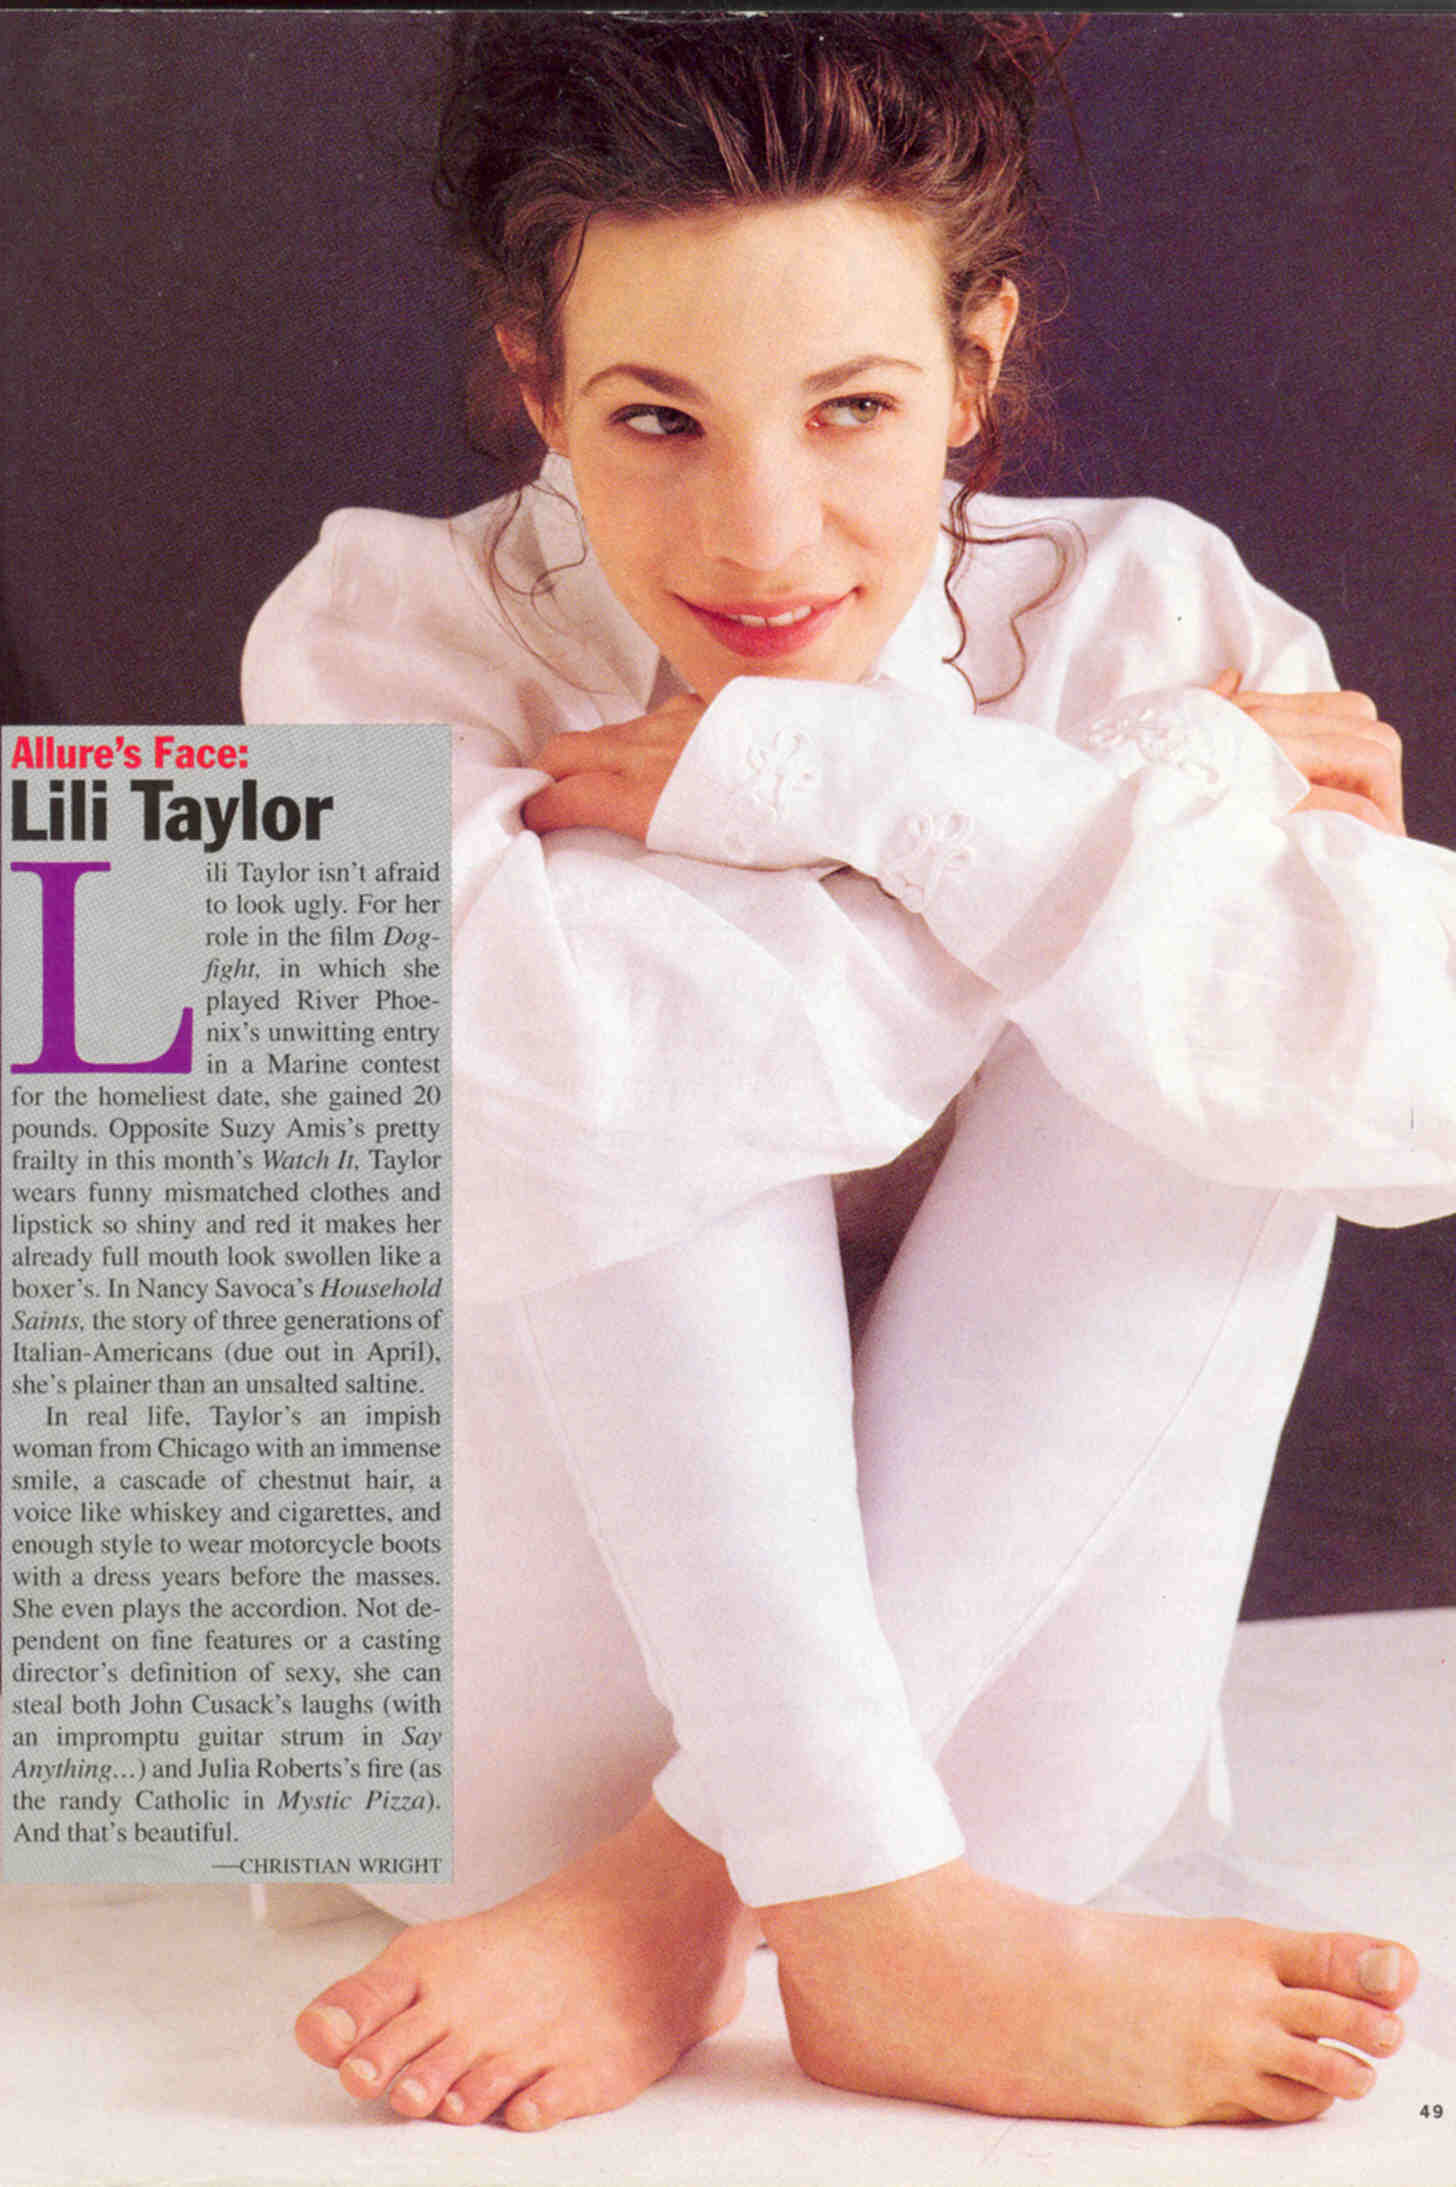 Молодость Лили Тейлор: зажигательная энергия и свобода духа в образе ...